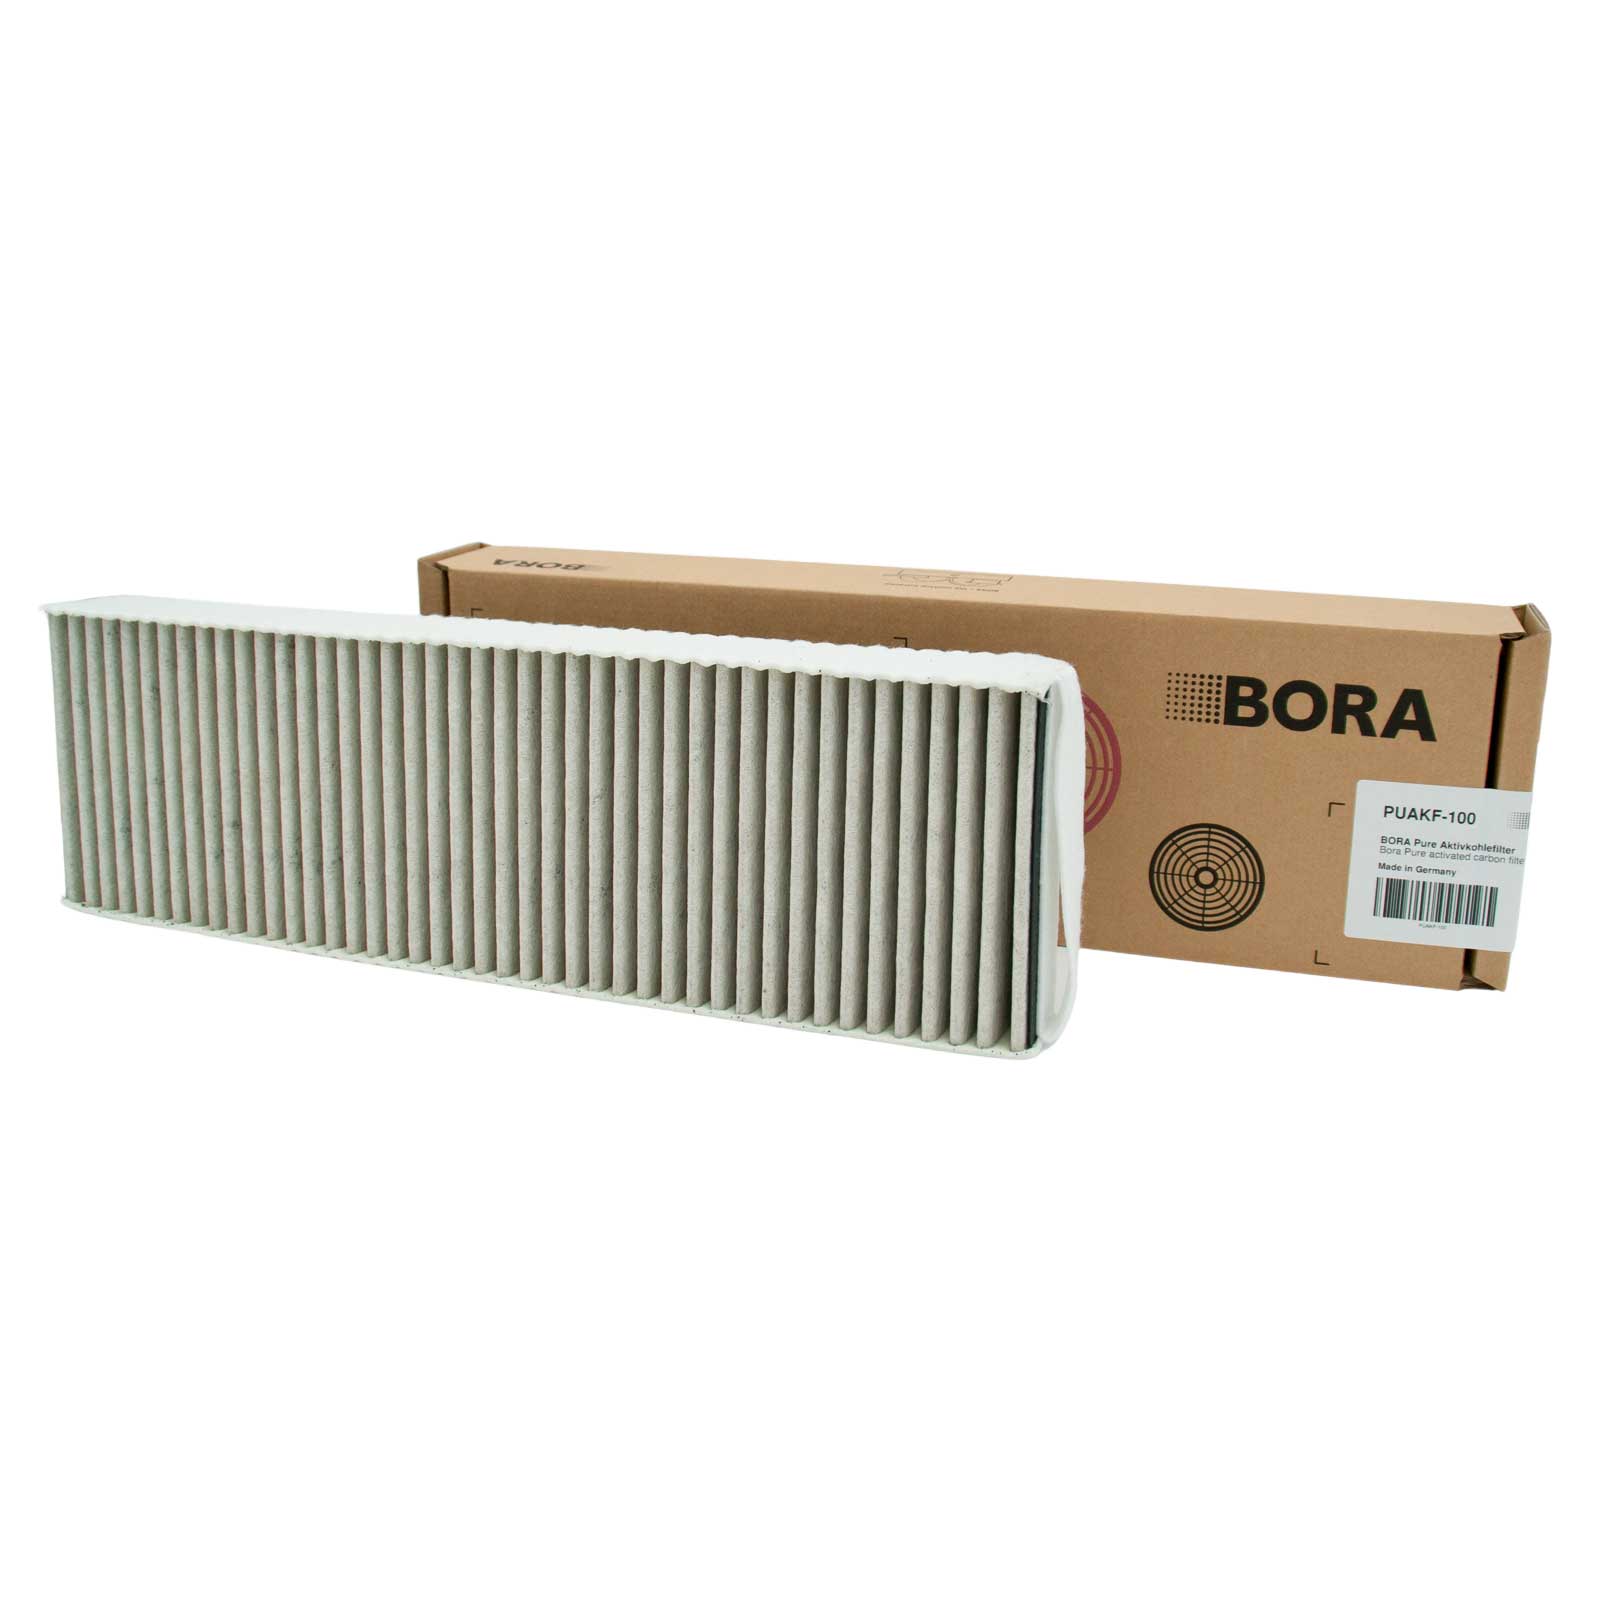 Bora Pure Actief Koolstof Filter (PUAKF) - Kookplaatafzuigfiltershop